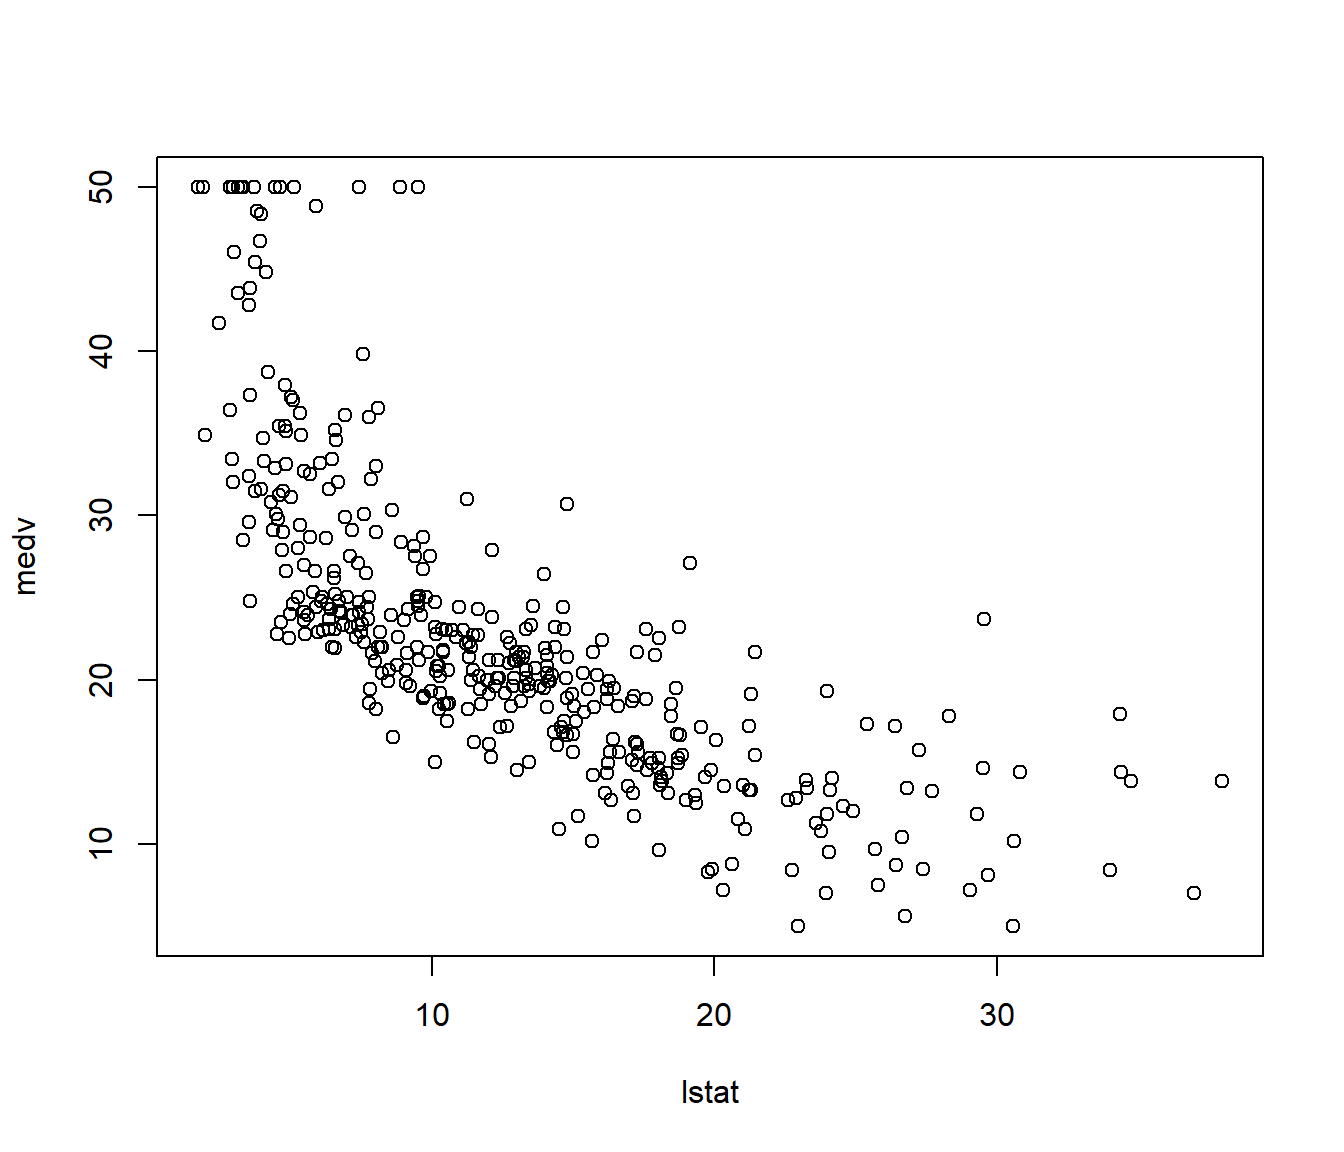 Gráfico de dispersión de las valoraciones de las viviendas (medv) frente al porcentaje de población con “menor estatus” (lstat).